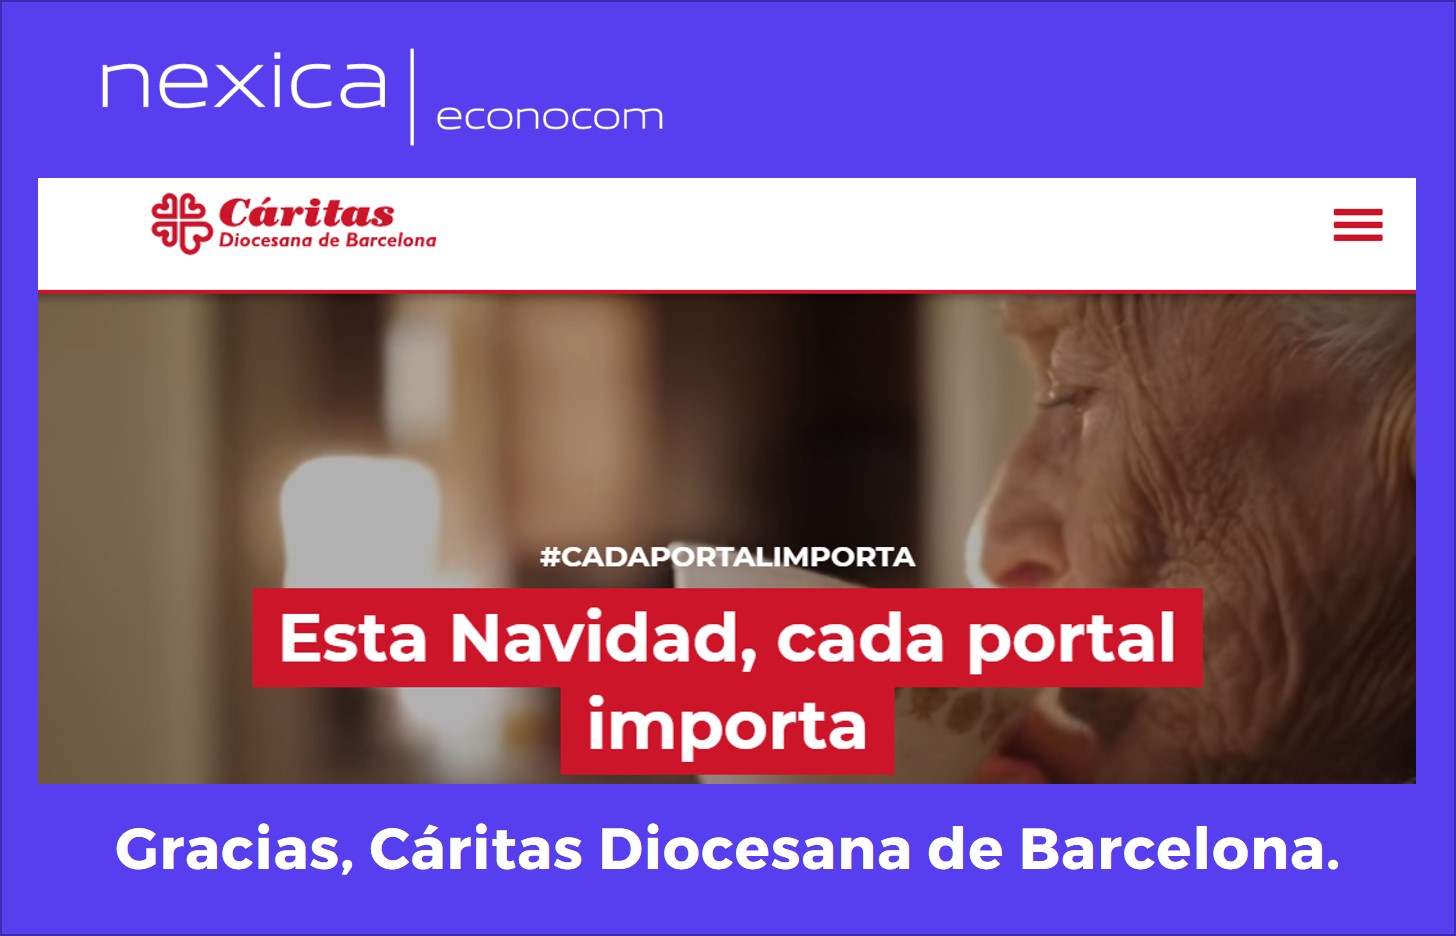 Econocom Nexica colabora con Cáritas Barcelona